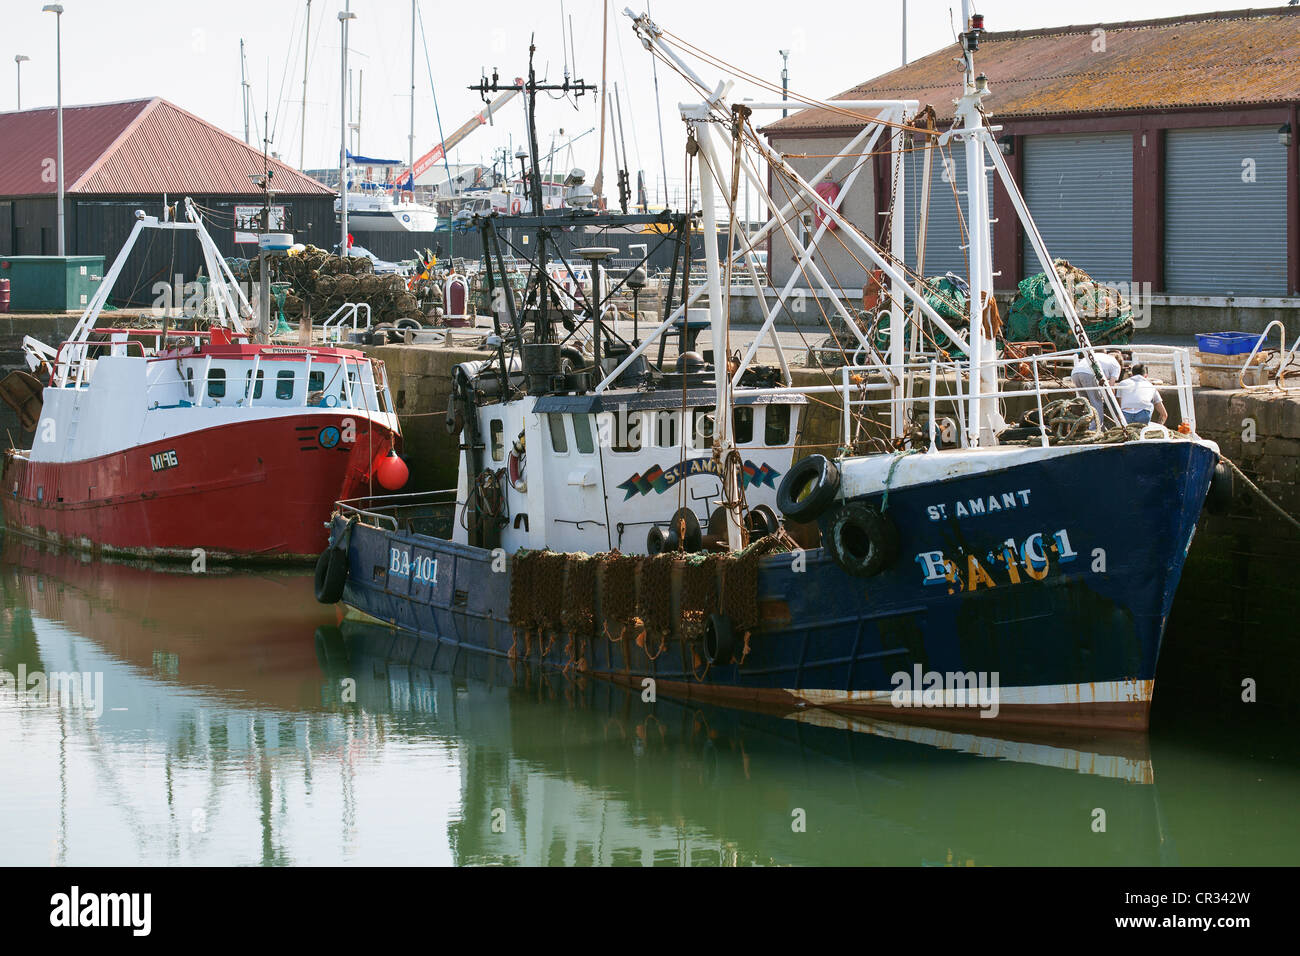 Les chalutiers et bateaux de pêche. Port d'Arbroath Ecosse UK Banque D'Images